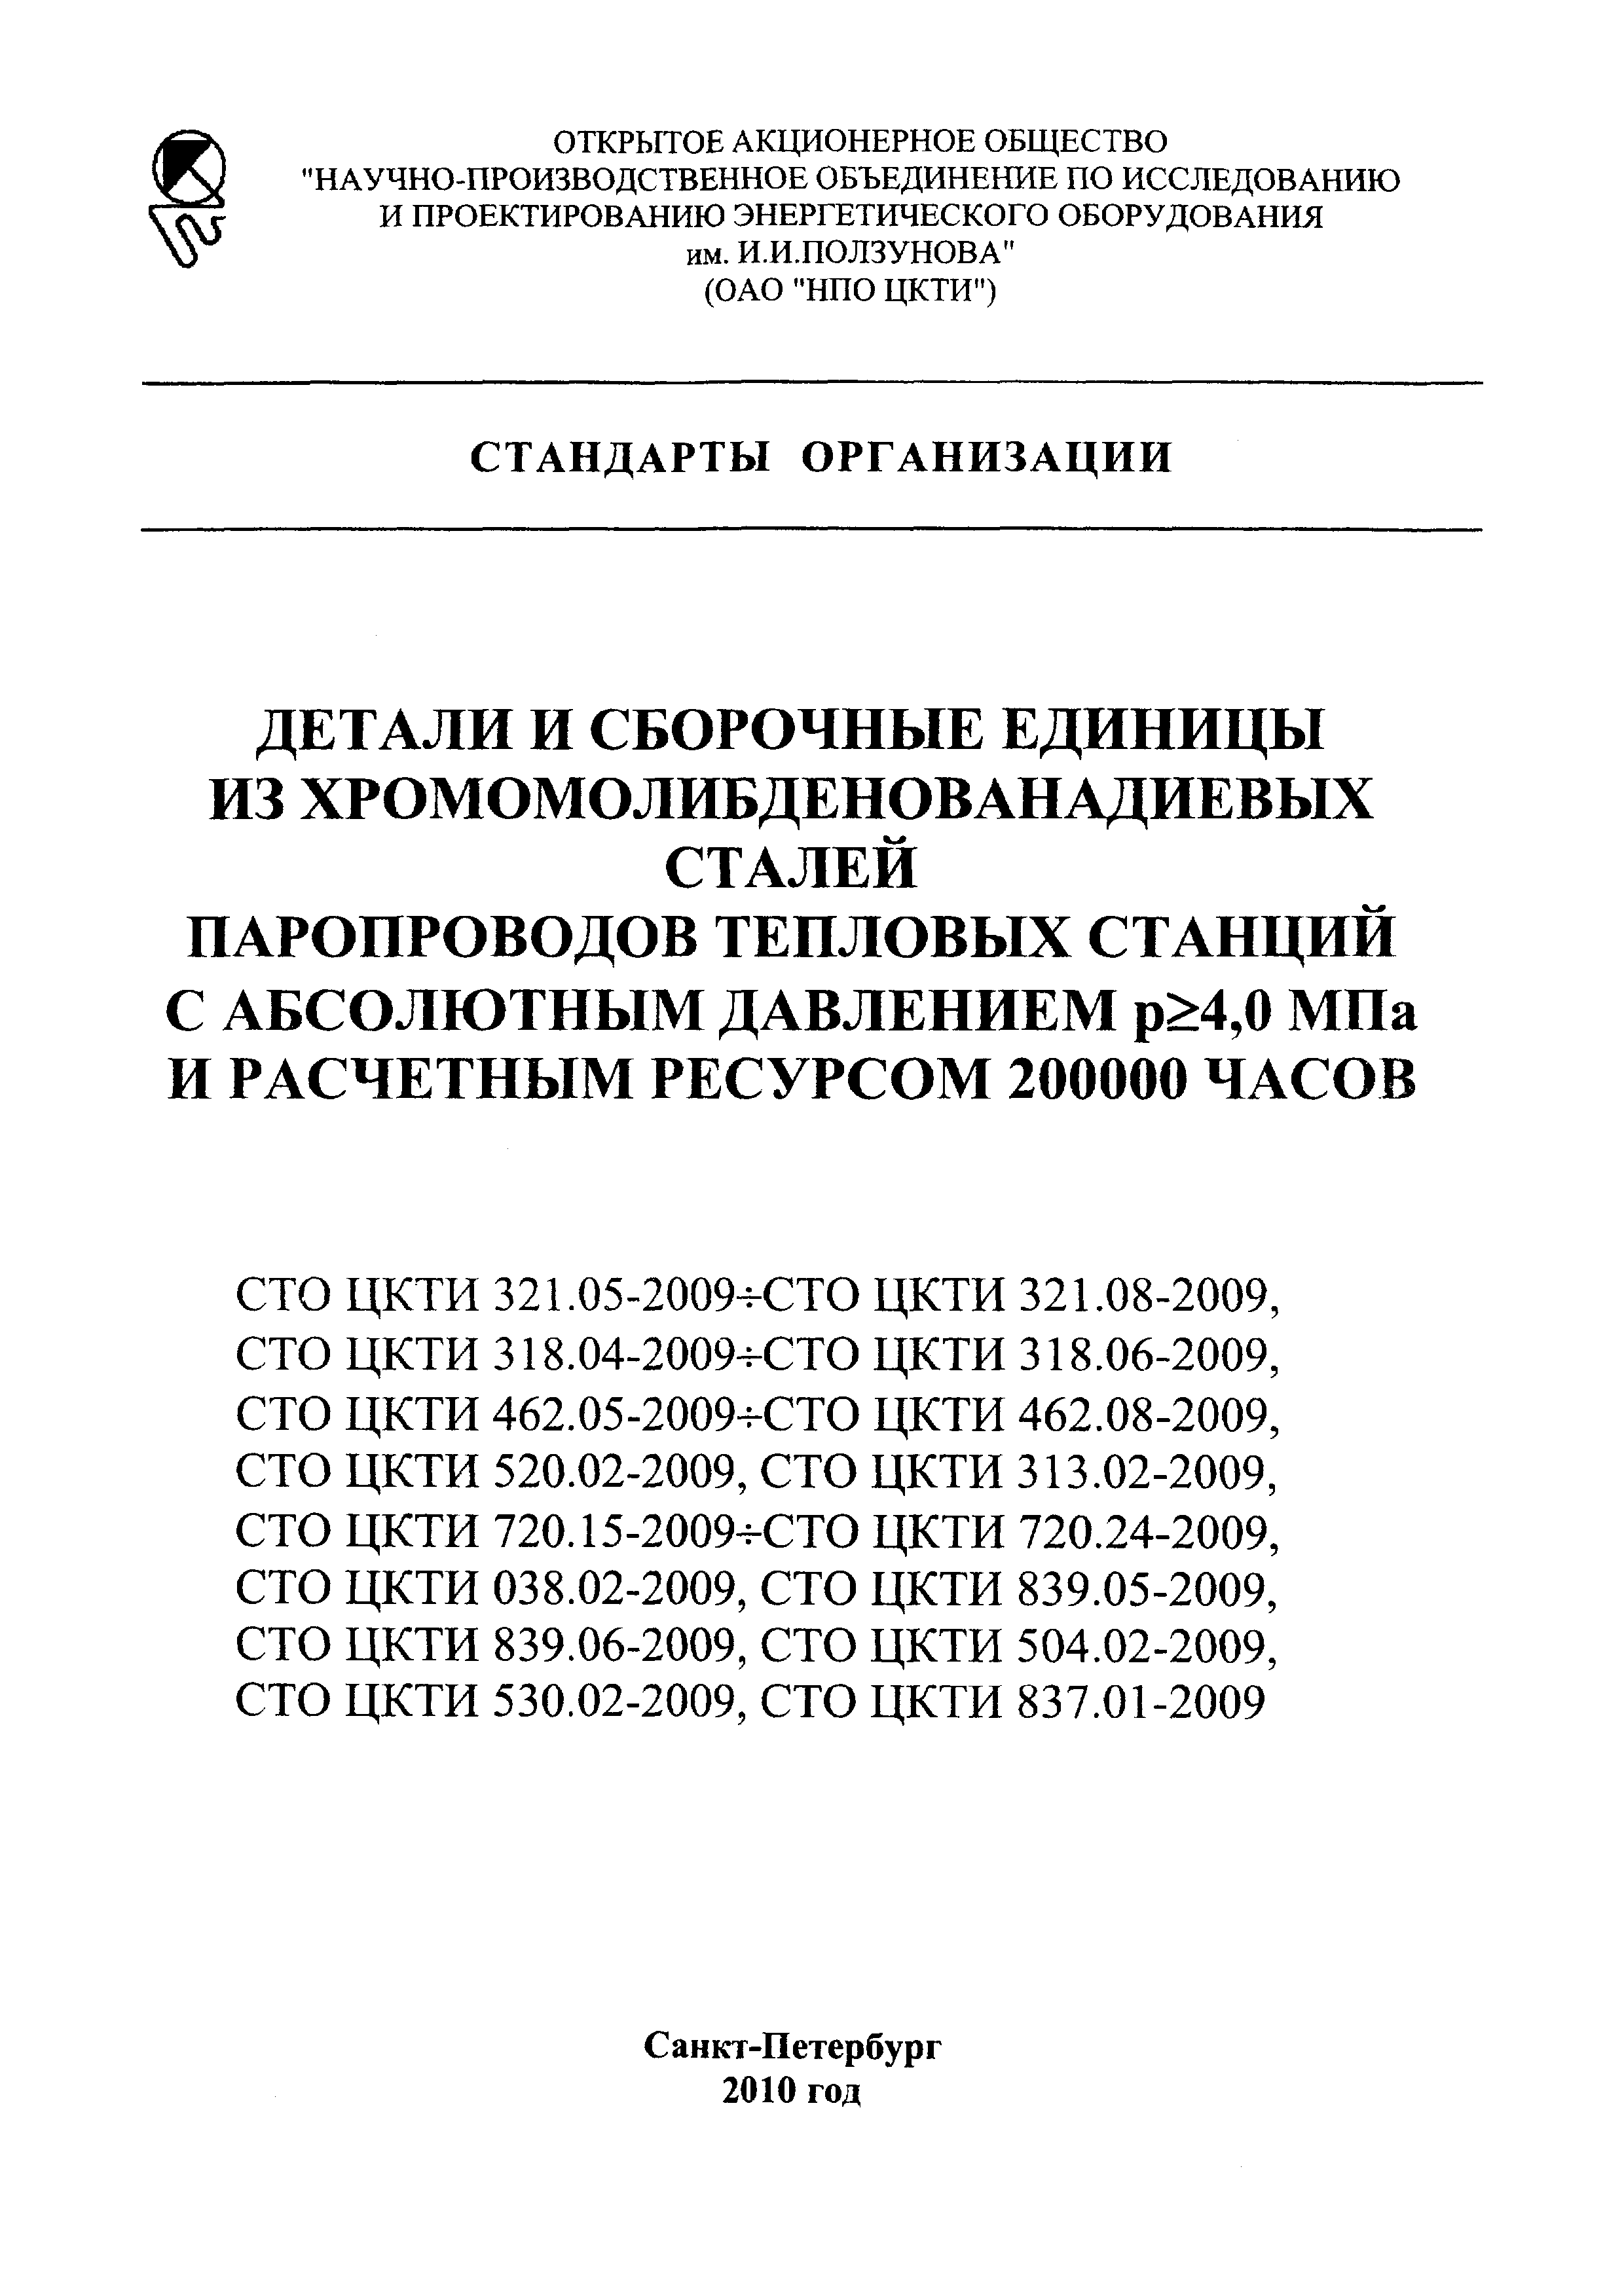 СТО ЦКТИ 720.22-2009